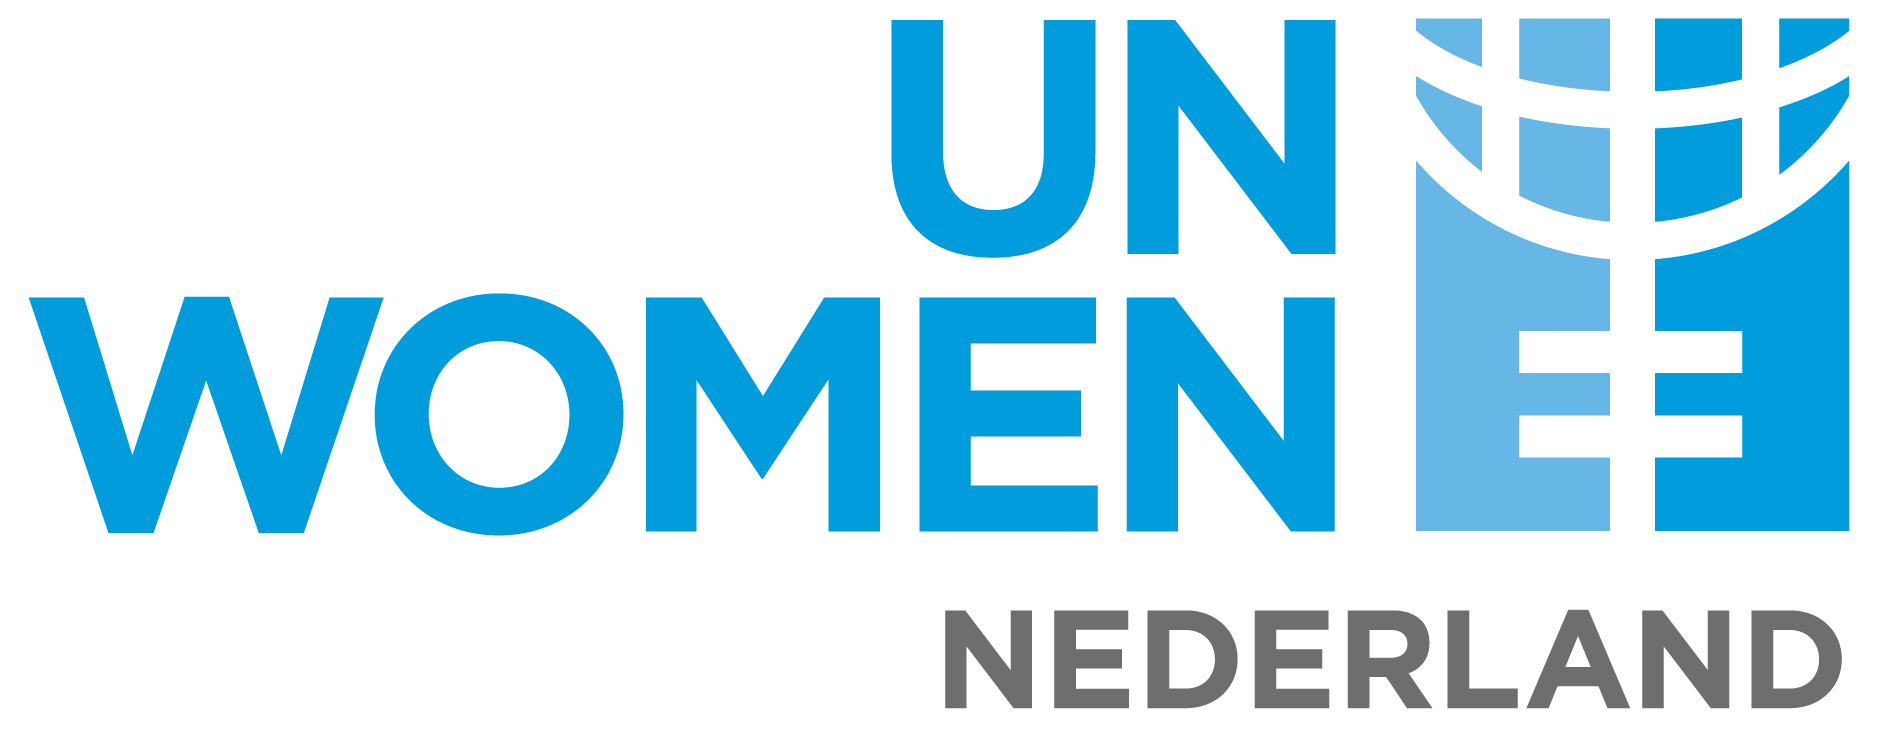 UN Women Nederland